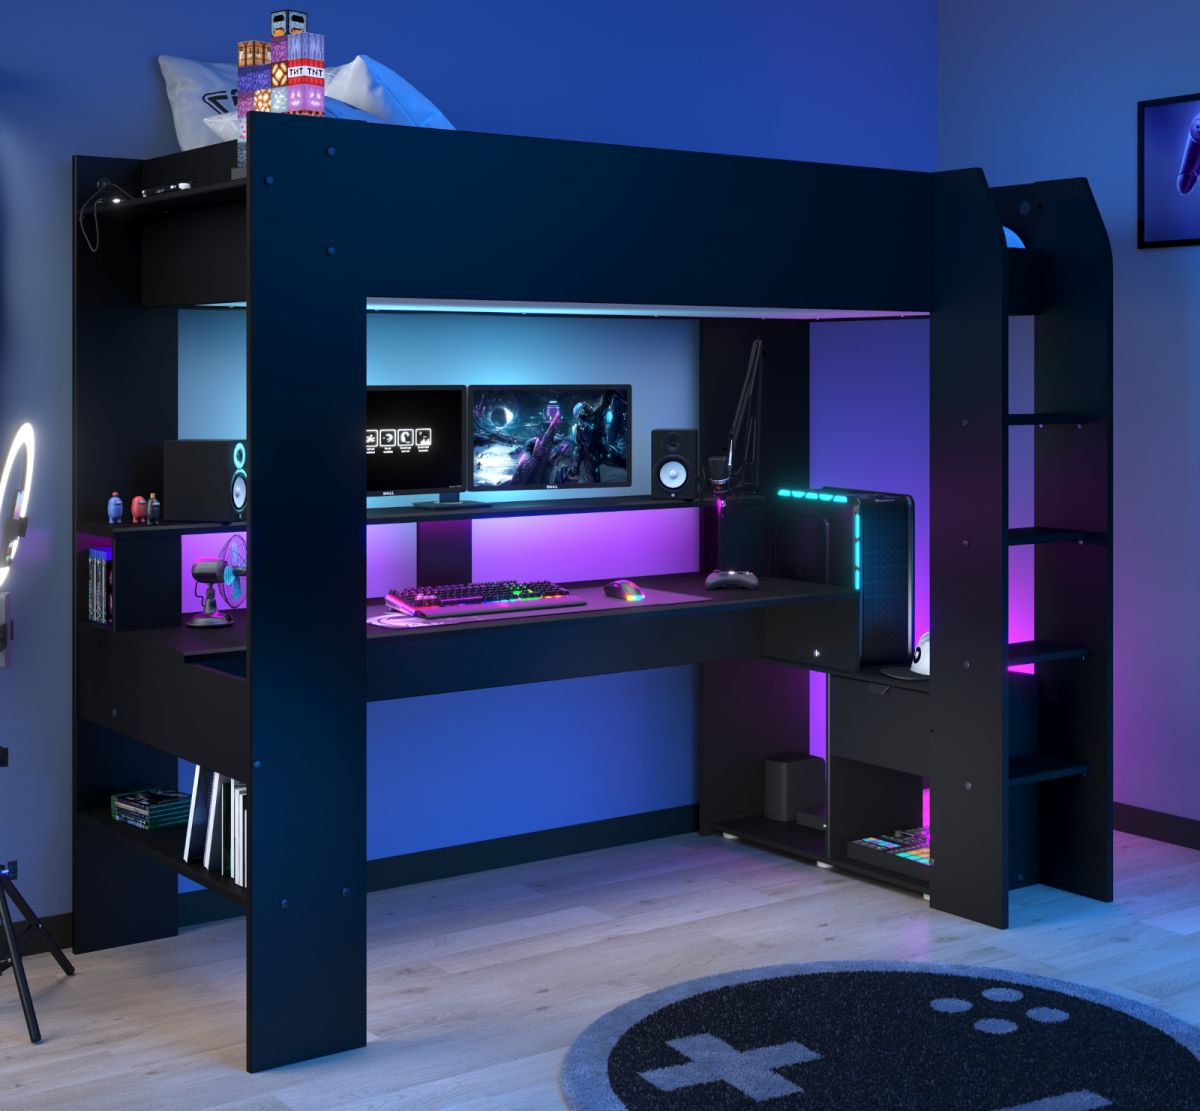 Parisot Hochbett 'Online1' in schwarz Gaming Jugendzimmer Bett mit Schreibtisch inkl. LED Beleuchtung mit Farbwechsel